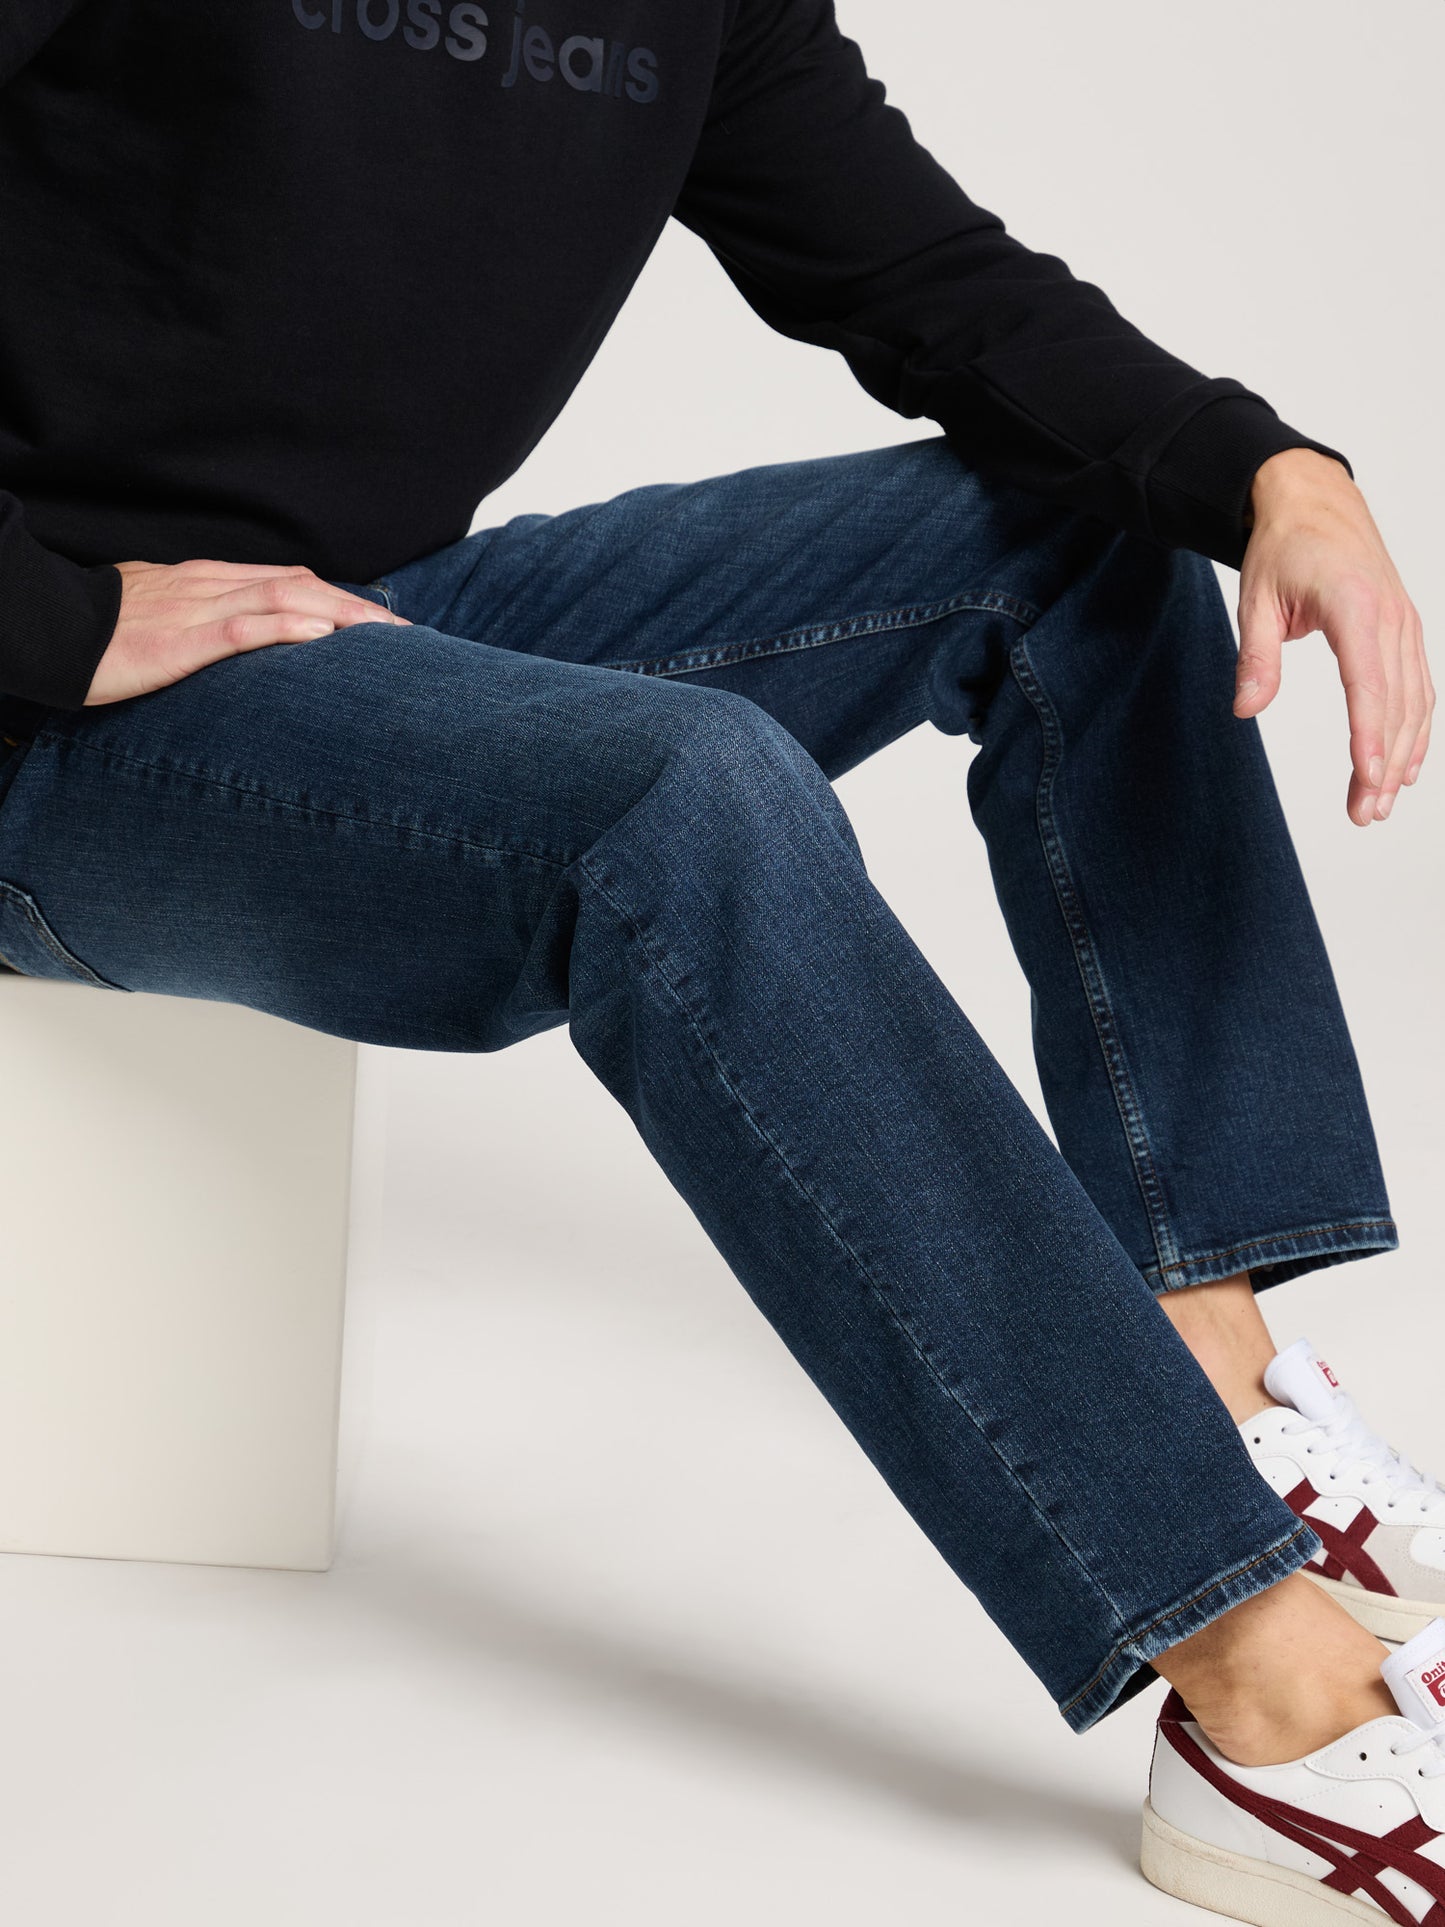 Antonio Herren Jeans Relaxed Fit Regular Waist Straight Leg dunkelblau